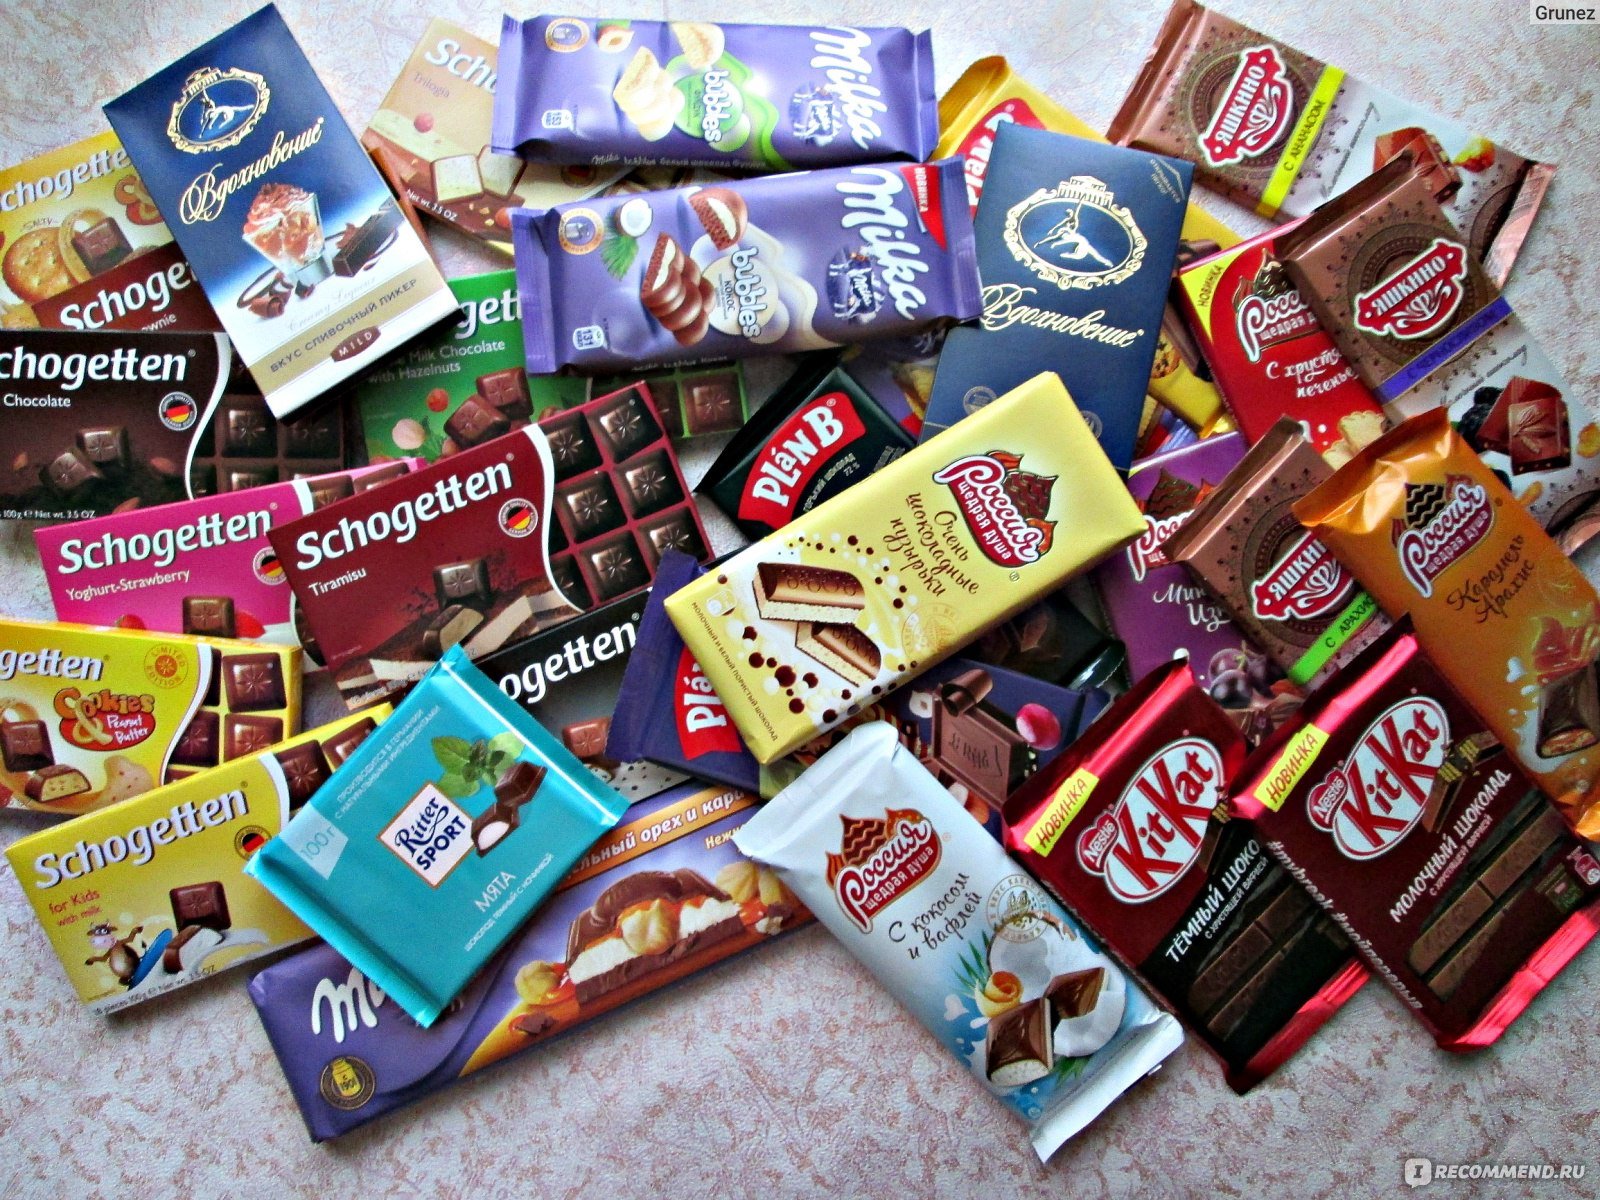 Шоколадный ассортимент. Шоколадки фирмы. Разные шоколадки. Шоколадки разные марки. Шоколадки фирмы разные.